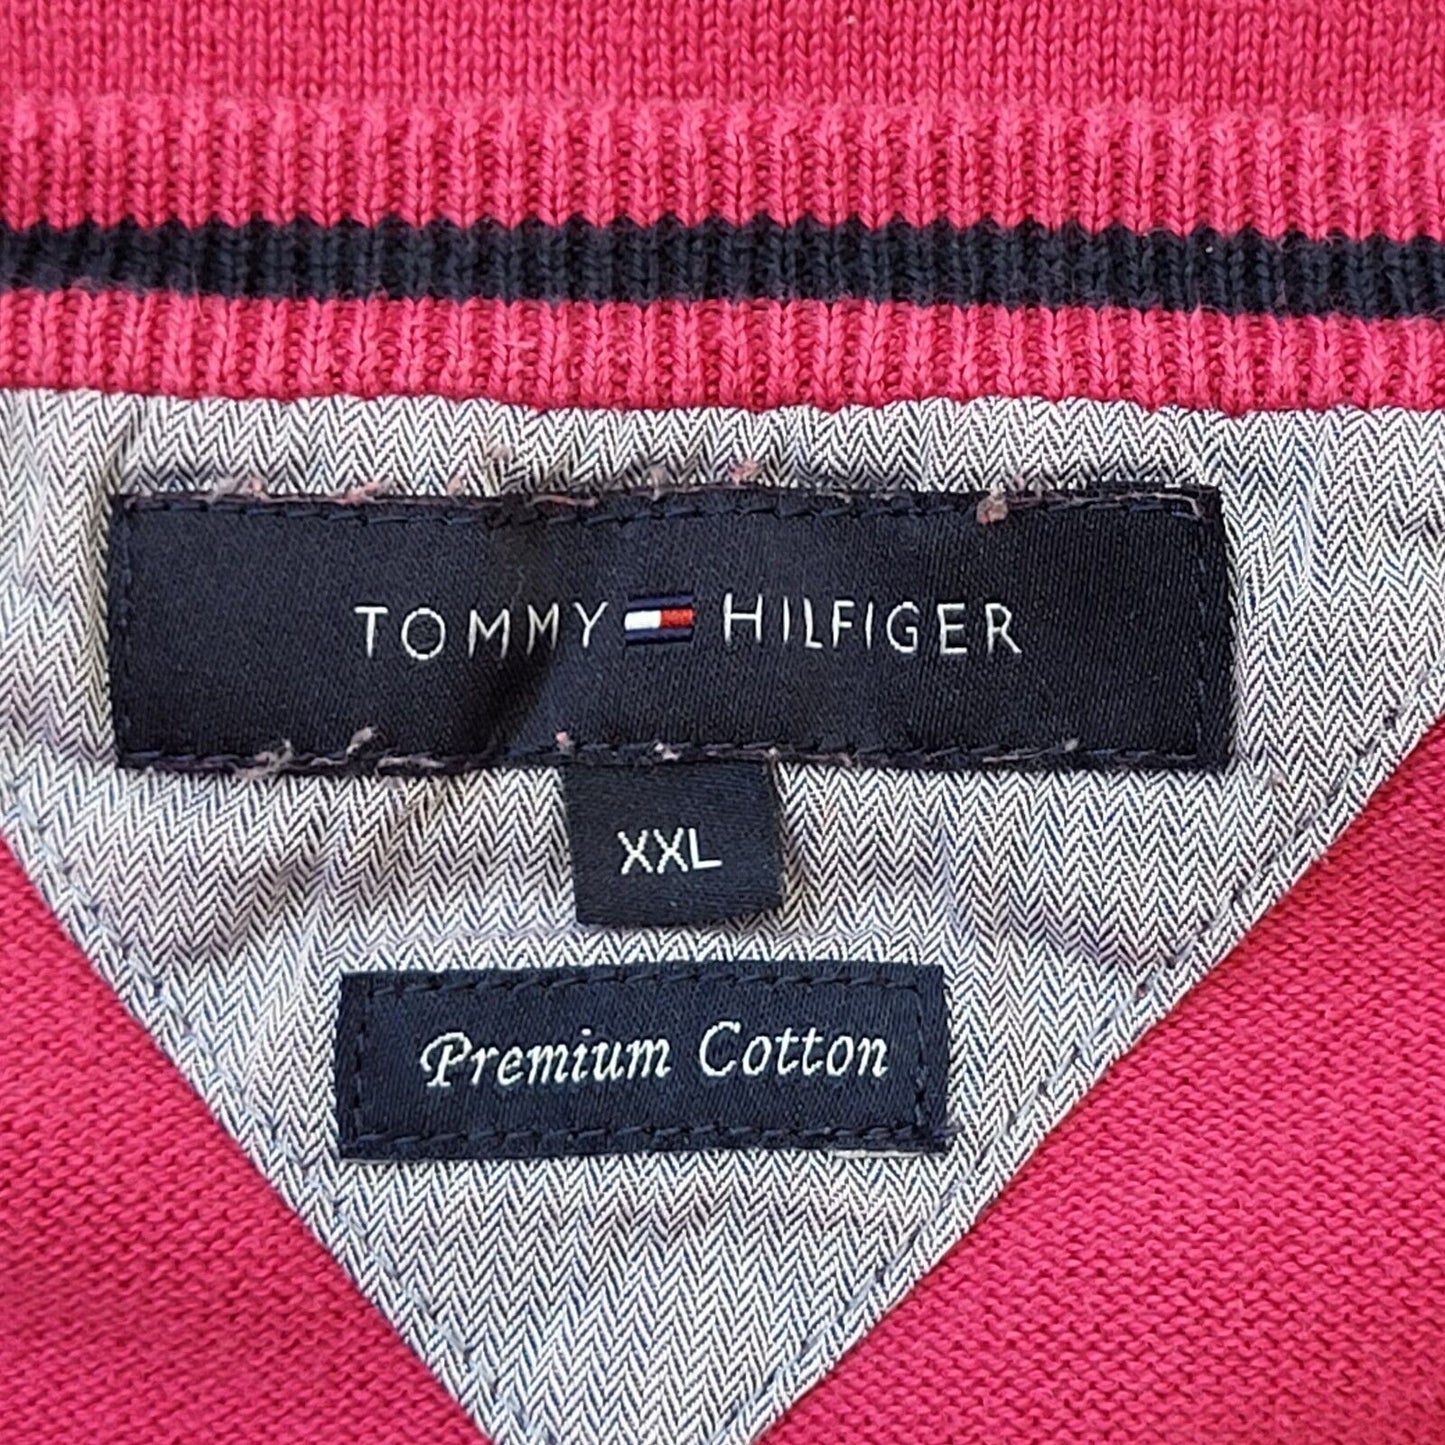 Tommy Hilfiger Jumper (2XL)